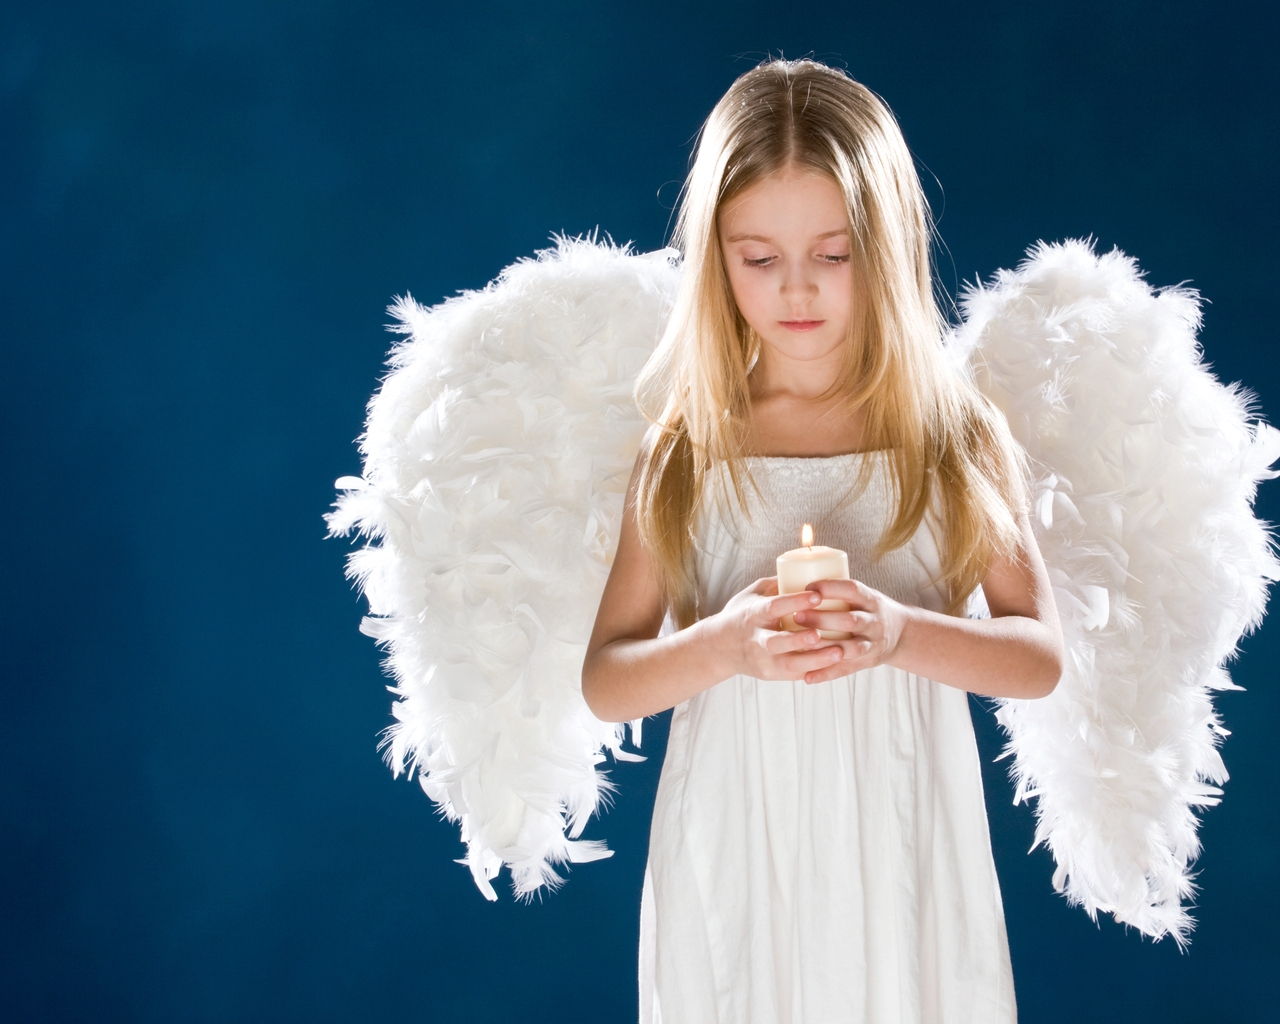 Little Angel Girl for 1280 x 1024 resolution